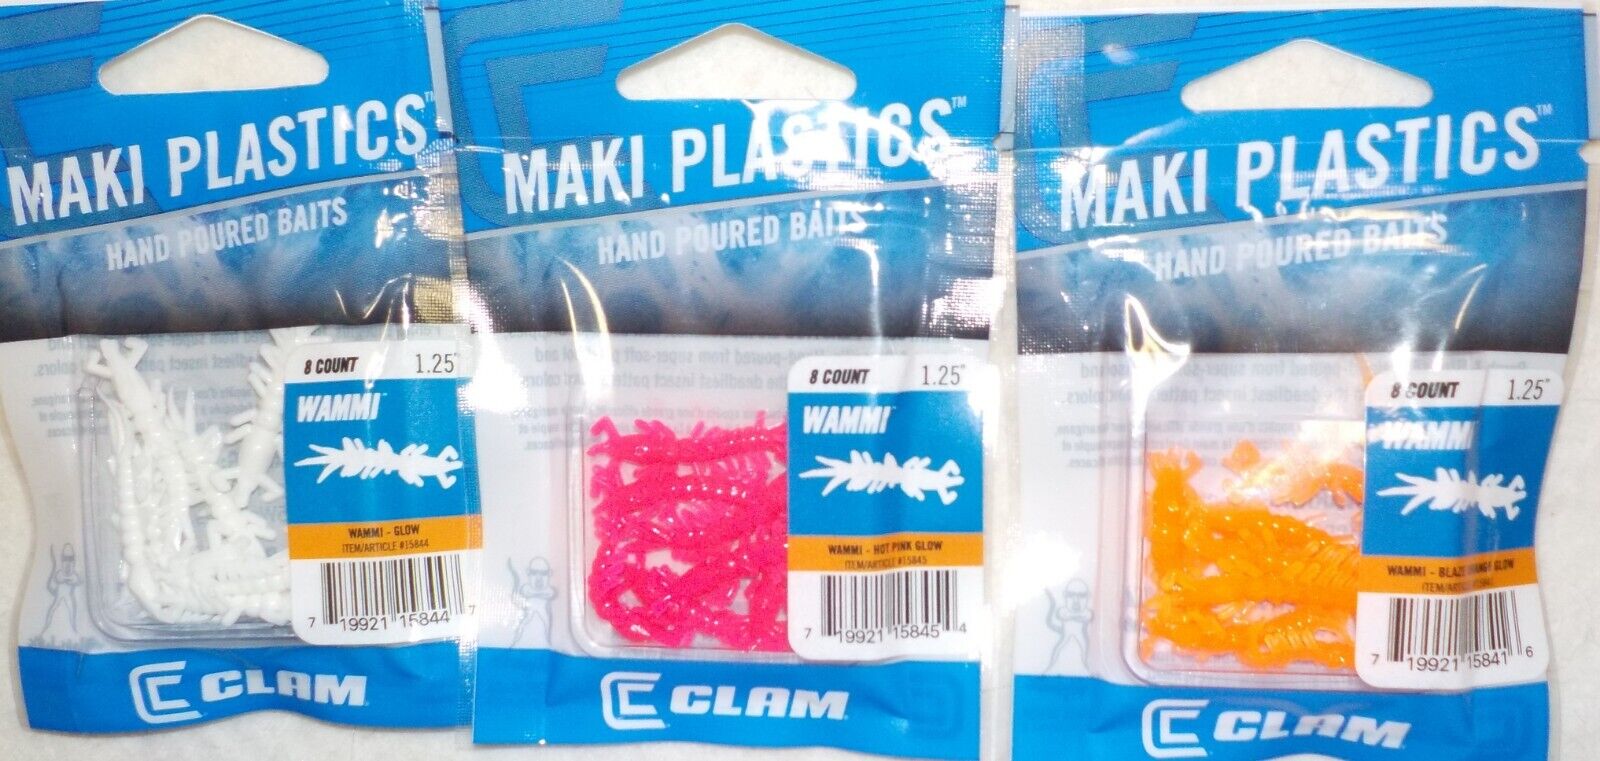 1.25" CLAM MAKI WAMMI CRAPPIE BLUEGILL PERCH ICE FISHING PLASTIC LURE BODIES